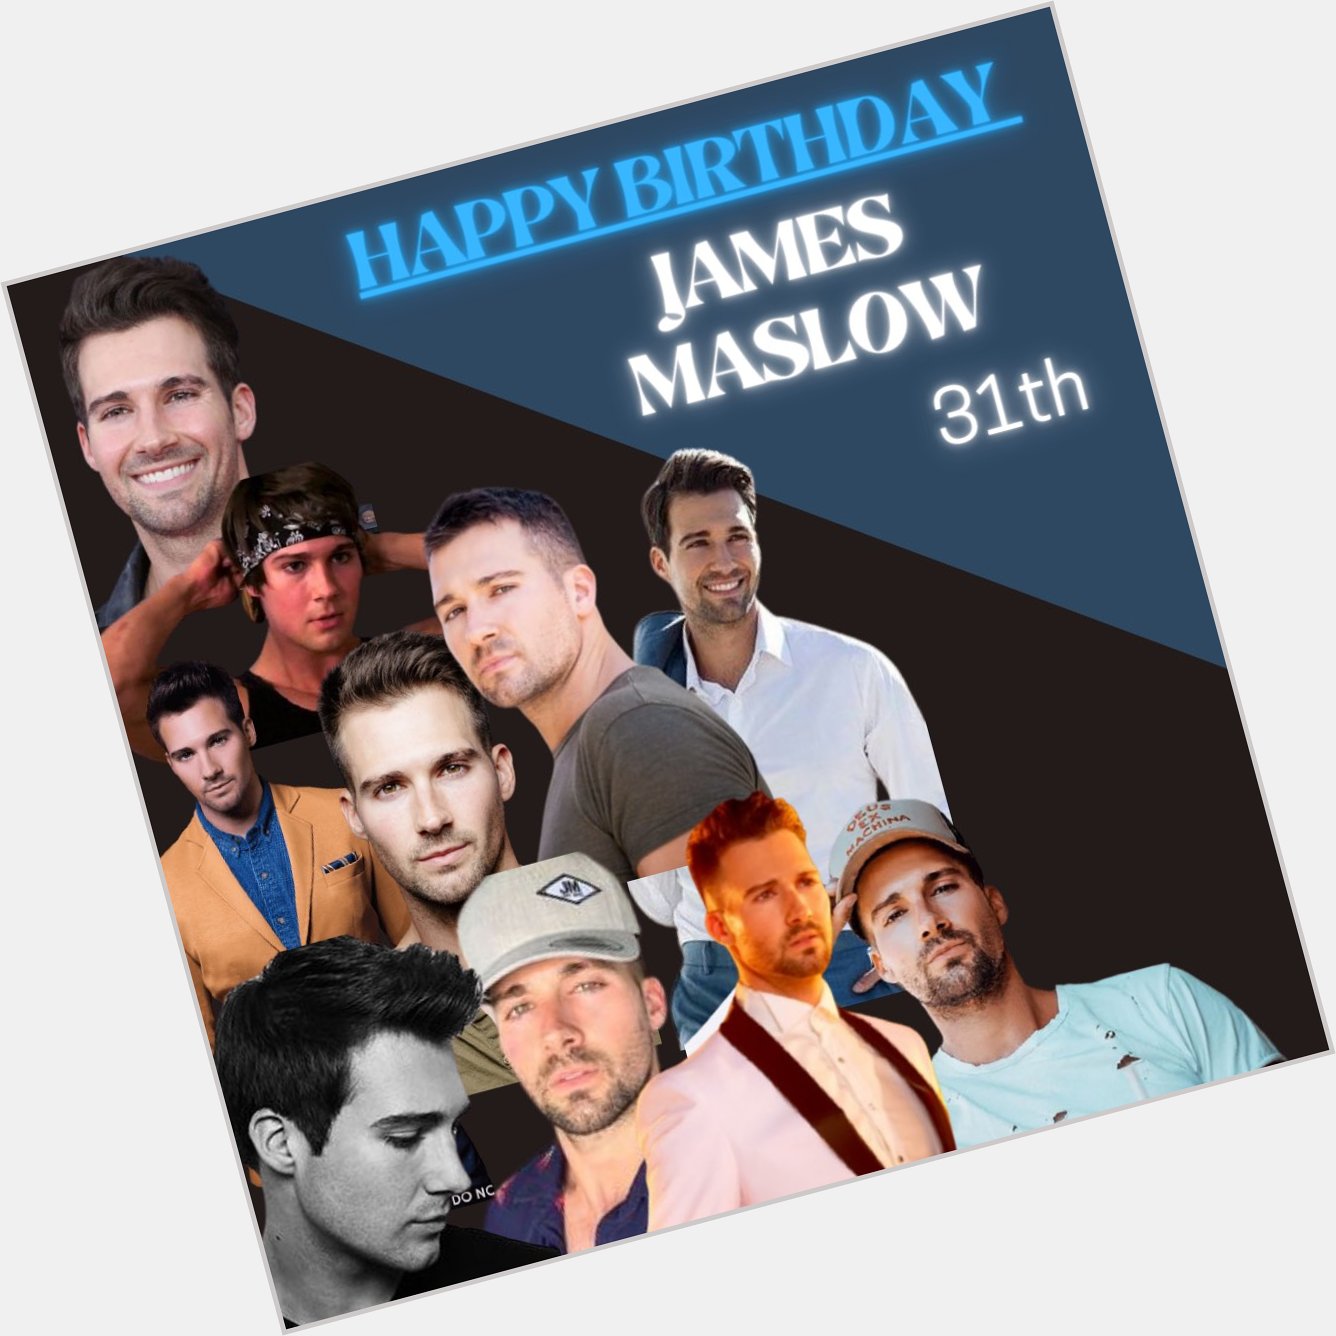 Happy Birthday James Maslow, suas fãs brasileiras te amam muitoooooo! 